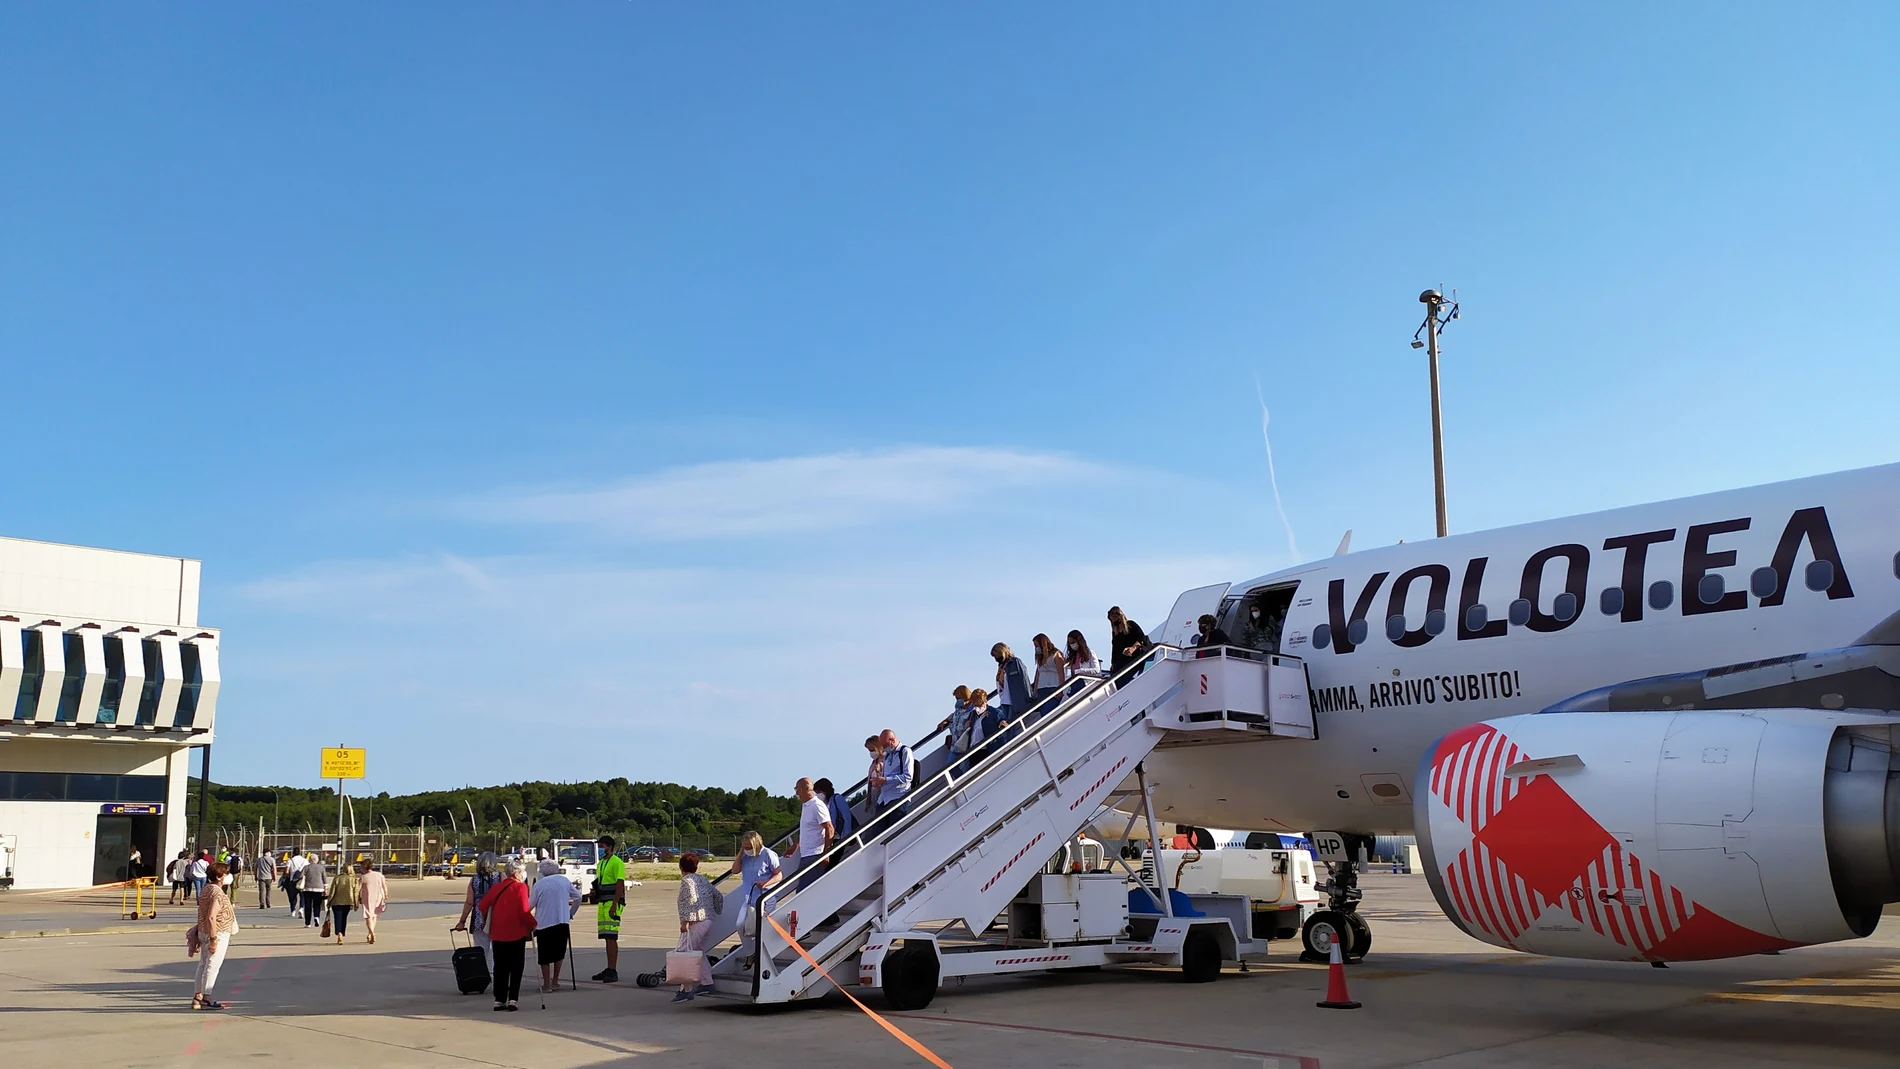 El aeropuerto de Castellón volverá a conectar con el de Bilbao a partir del 1 de junio